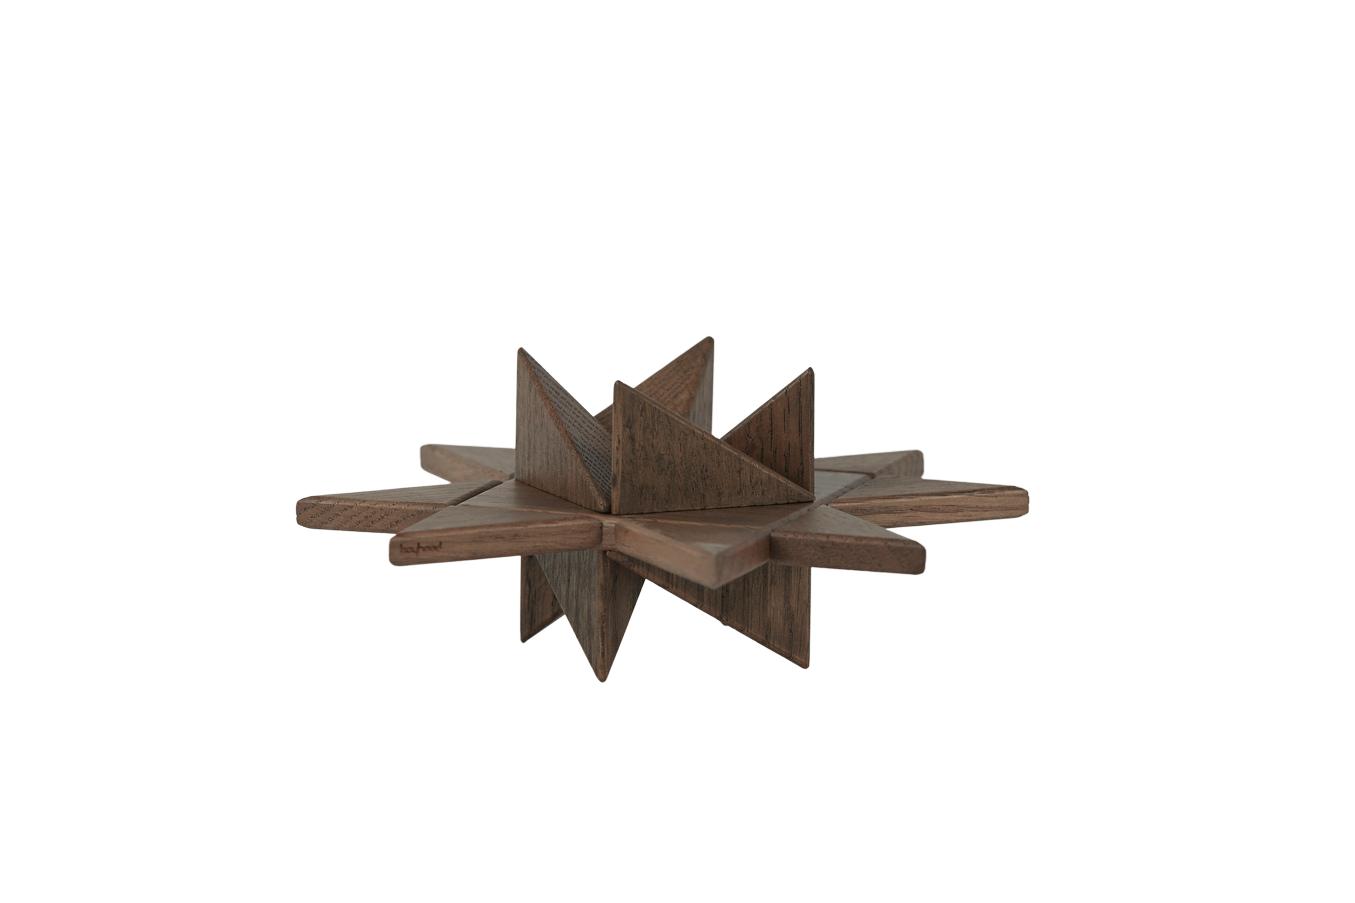 Figure décorative de table d'étoile fröbel de l'enfance, chêne taché